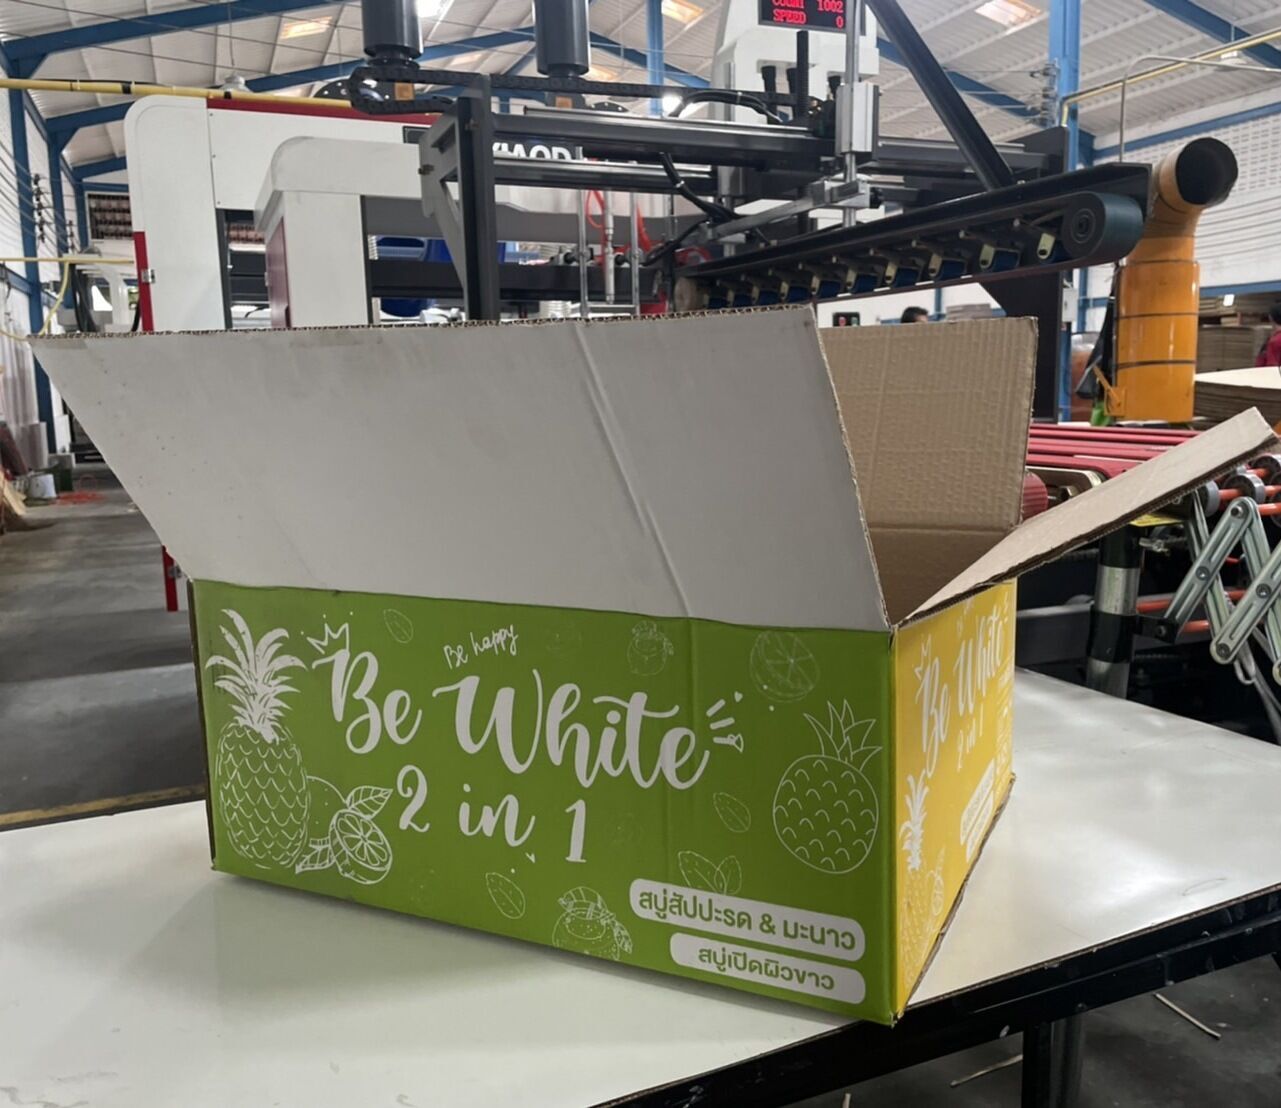 กล่องสบู่สับปะรดเปิดผิวขาวbe-whiteรับผลิตกล่องใส่สบู่สำหรับสบู่ผิวขาวหรือโลชั่นสำหรับผิวขาวเราเป็นโรงงานรับผลิตกล่องสบู่เองโดยตรง